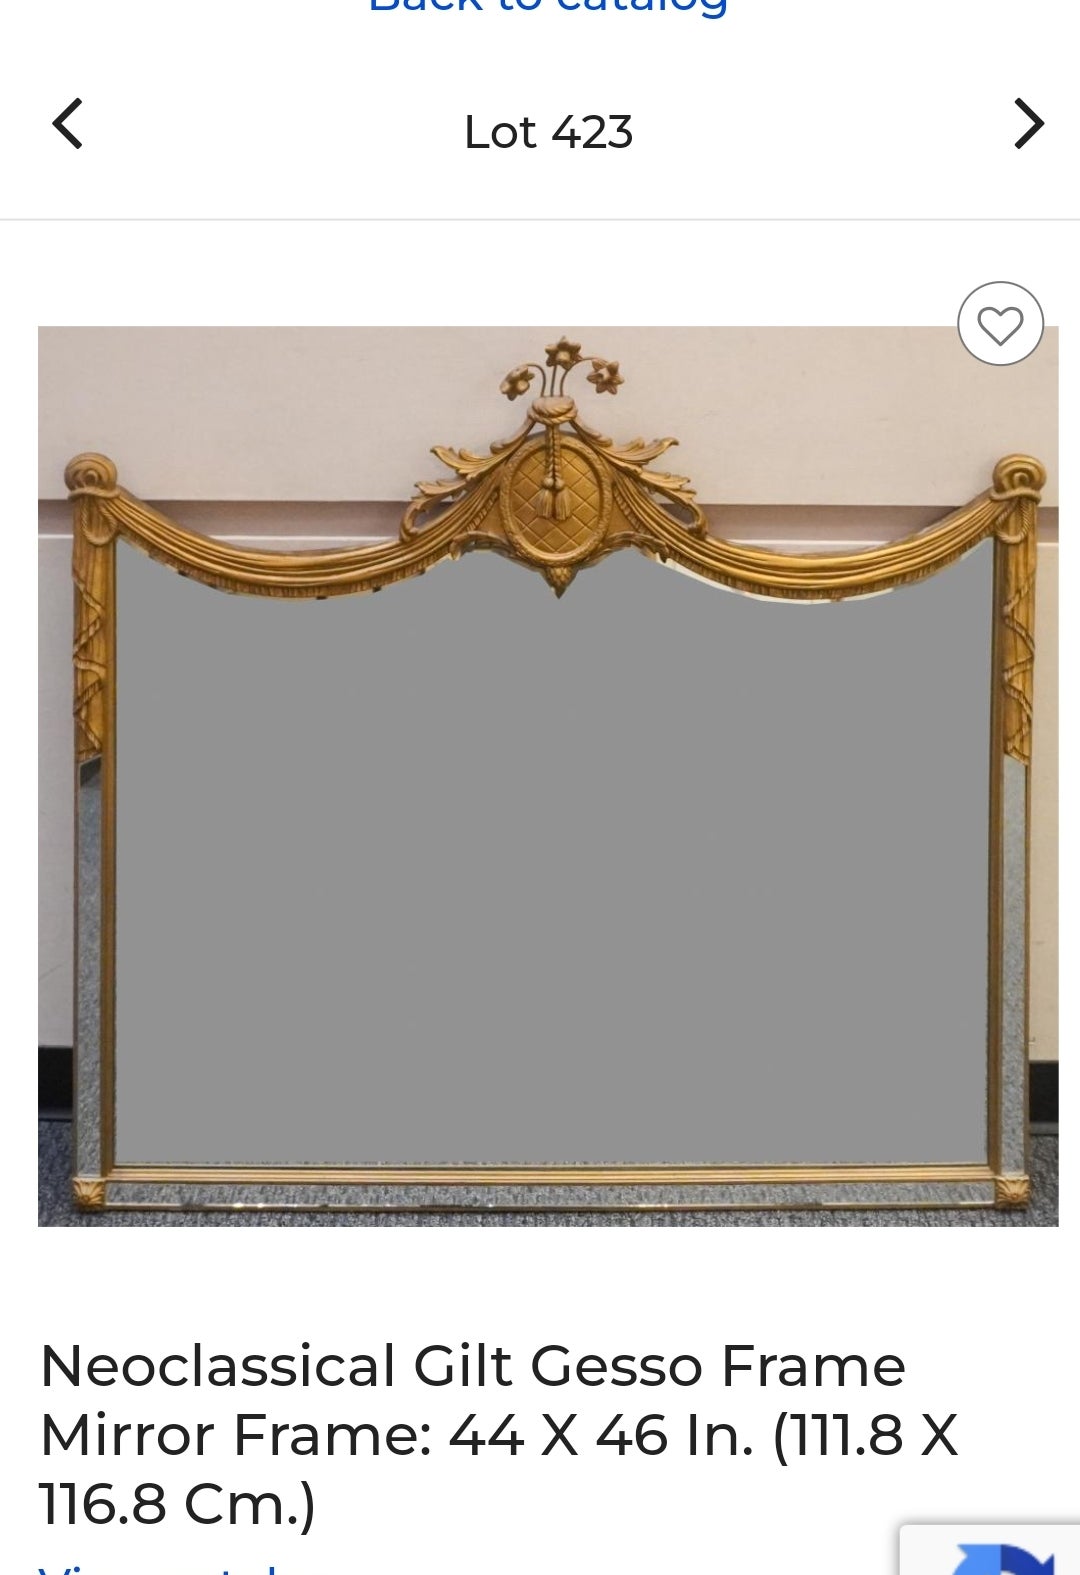 Miroir mural néoclassique à encadrement miroir en doré et gesso. Cadre lourd avec support en bois. Mesure 46